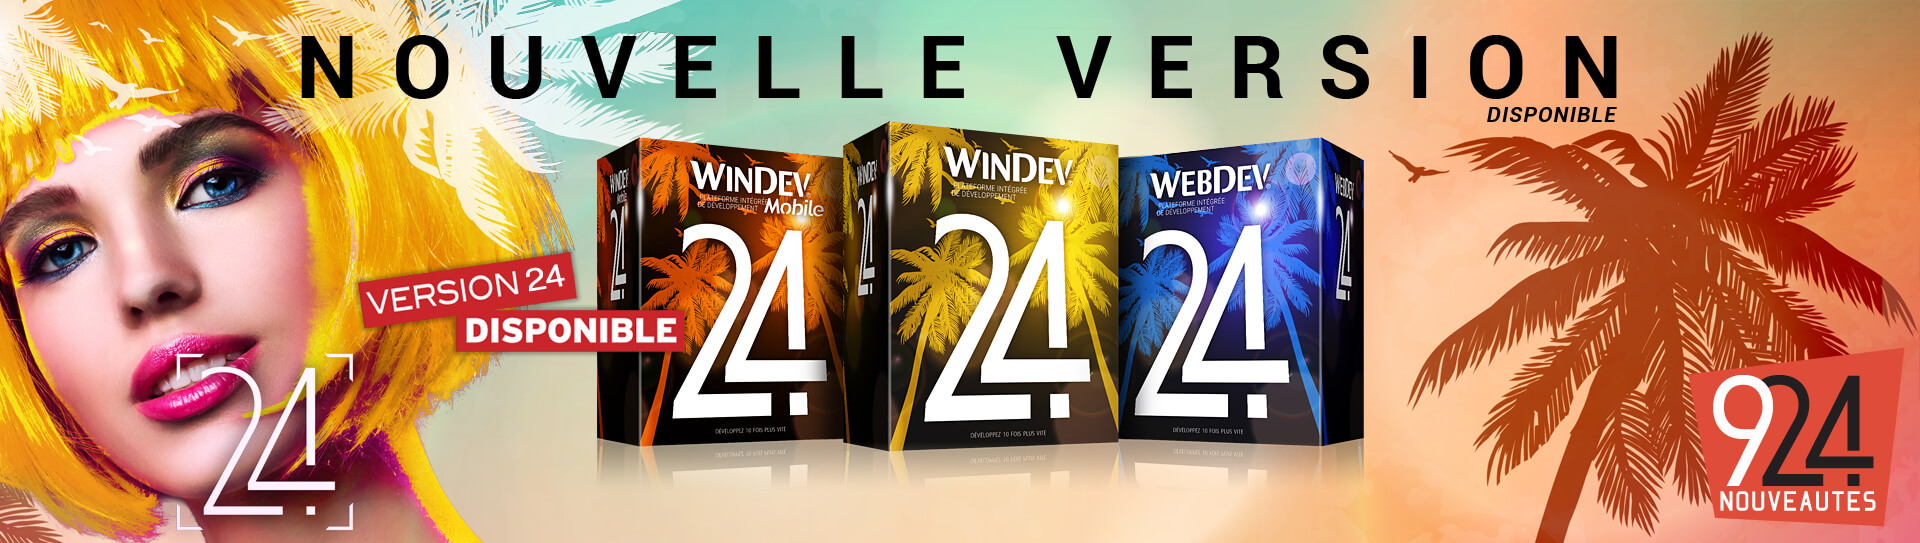 Version 24 de WINDEV, WEBDEV et WINDEV Mobile disponible dans l'espace téléchargement (version finale)